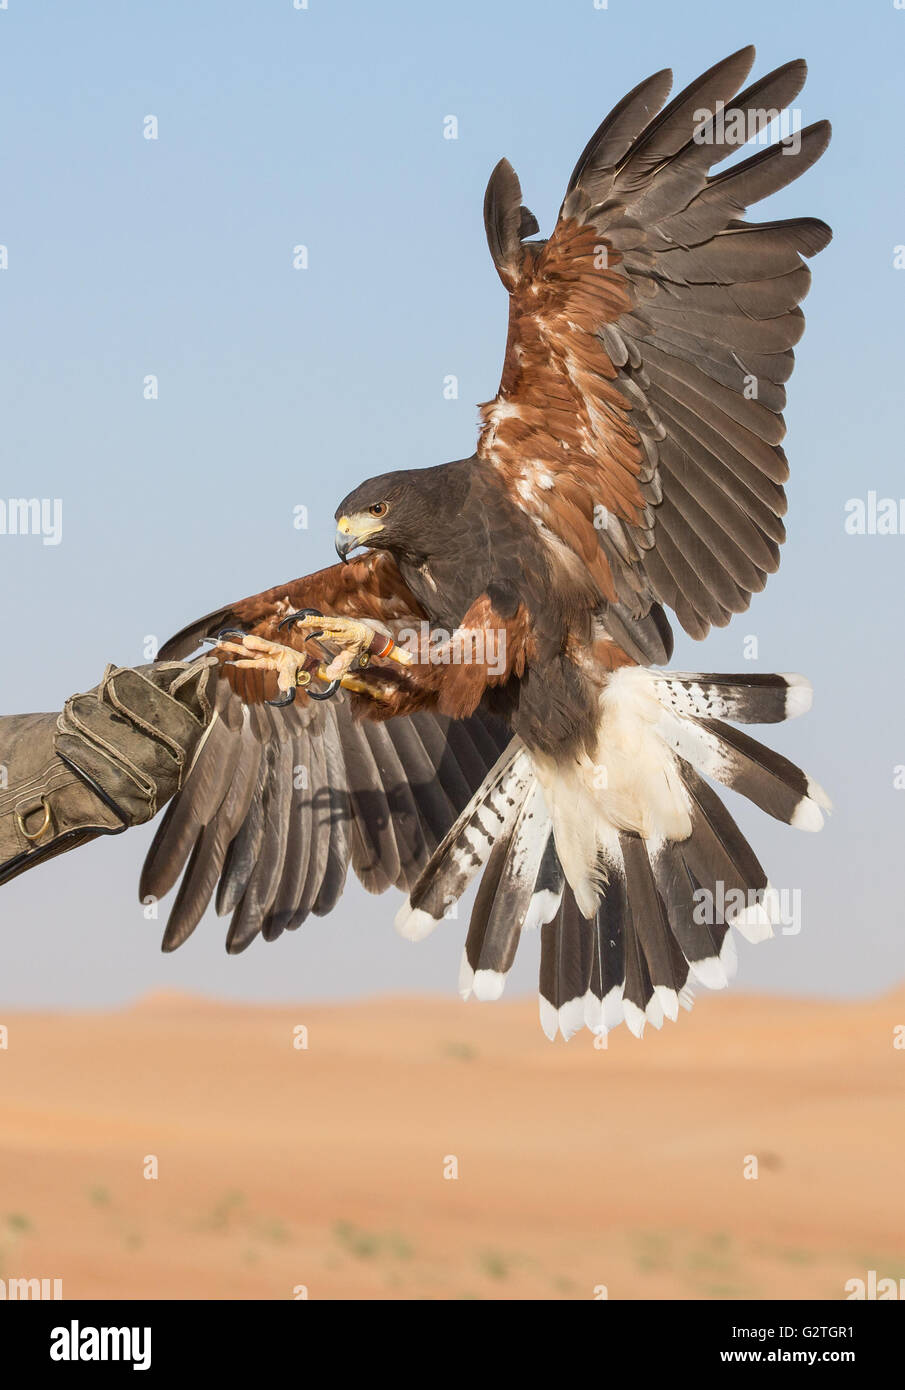 Harriet Hawk Landung auf einer Hand seines Trainers in einer Wüste in der Nähe von Dubai, Vereinigte Arabische Emirate Stockfoto